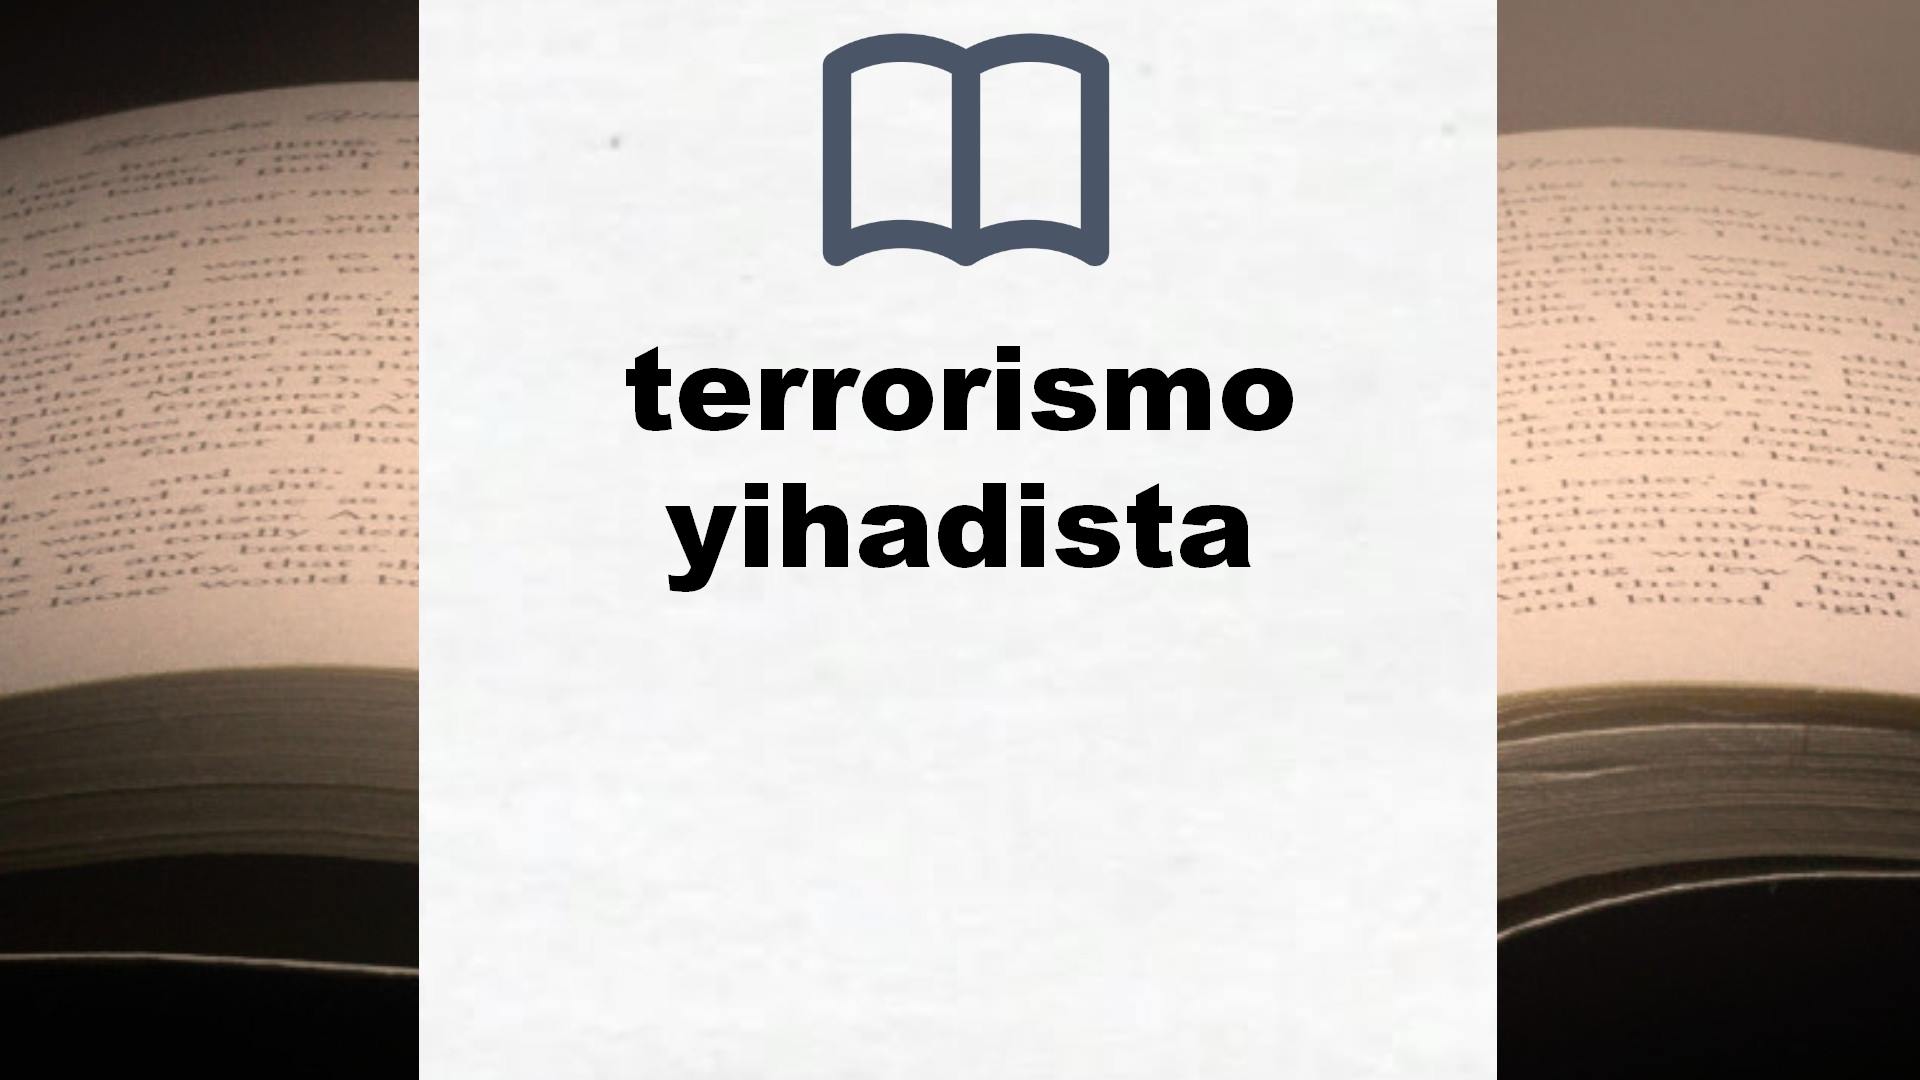 Libros sobre terrorismo yihadista